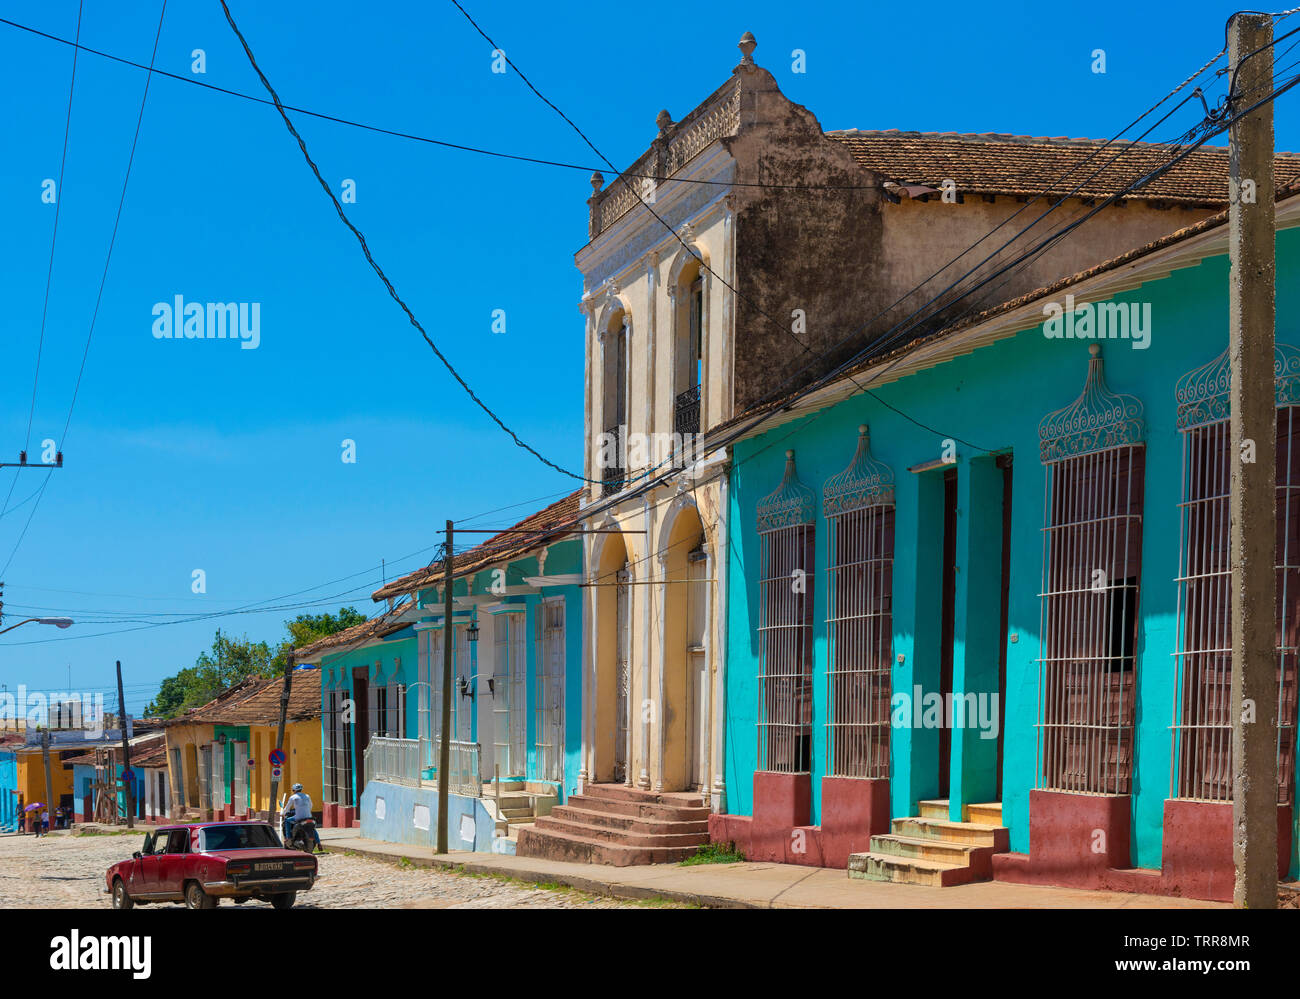 L'une des principales rues colorées dans la ville de Trinidad, la province de Sancti Spiritus, Cuba, Caraïbes Banque D'Images